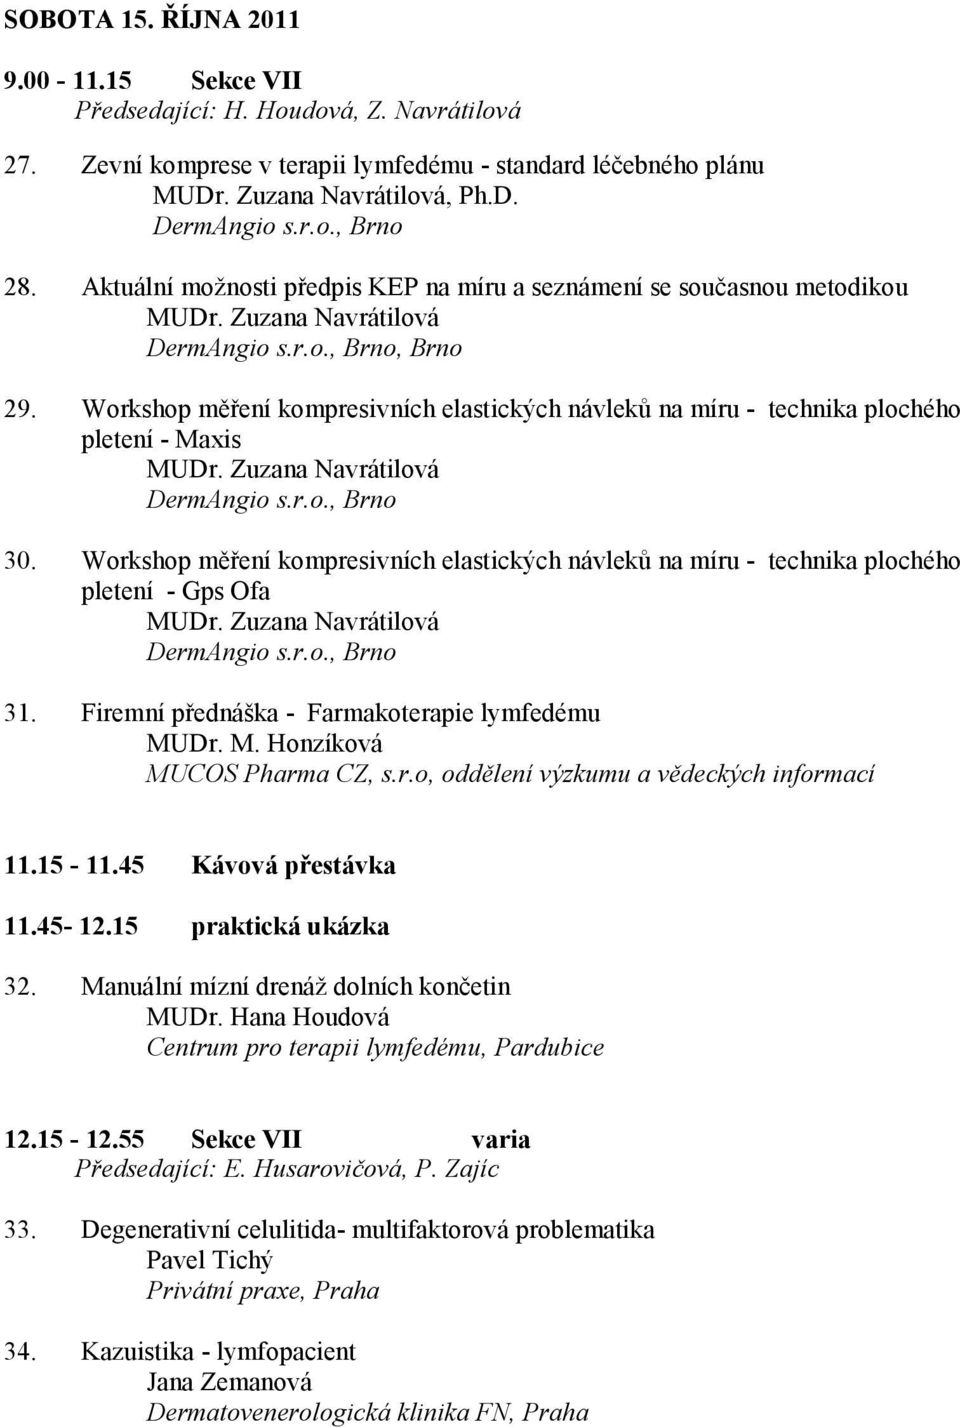 Workshop měření kompresivních elastických návleků na míru - technika plochého pletení - Maxis MUDr. Zuzana Navrátilová DermAngio s.r.o., Brno 30.